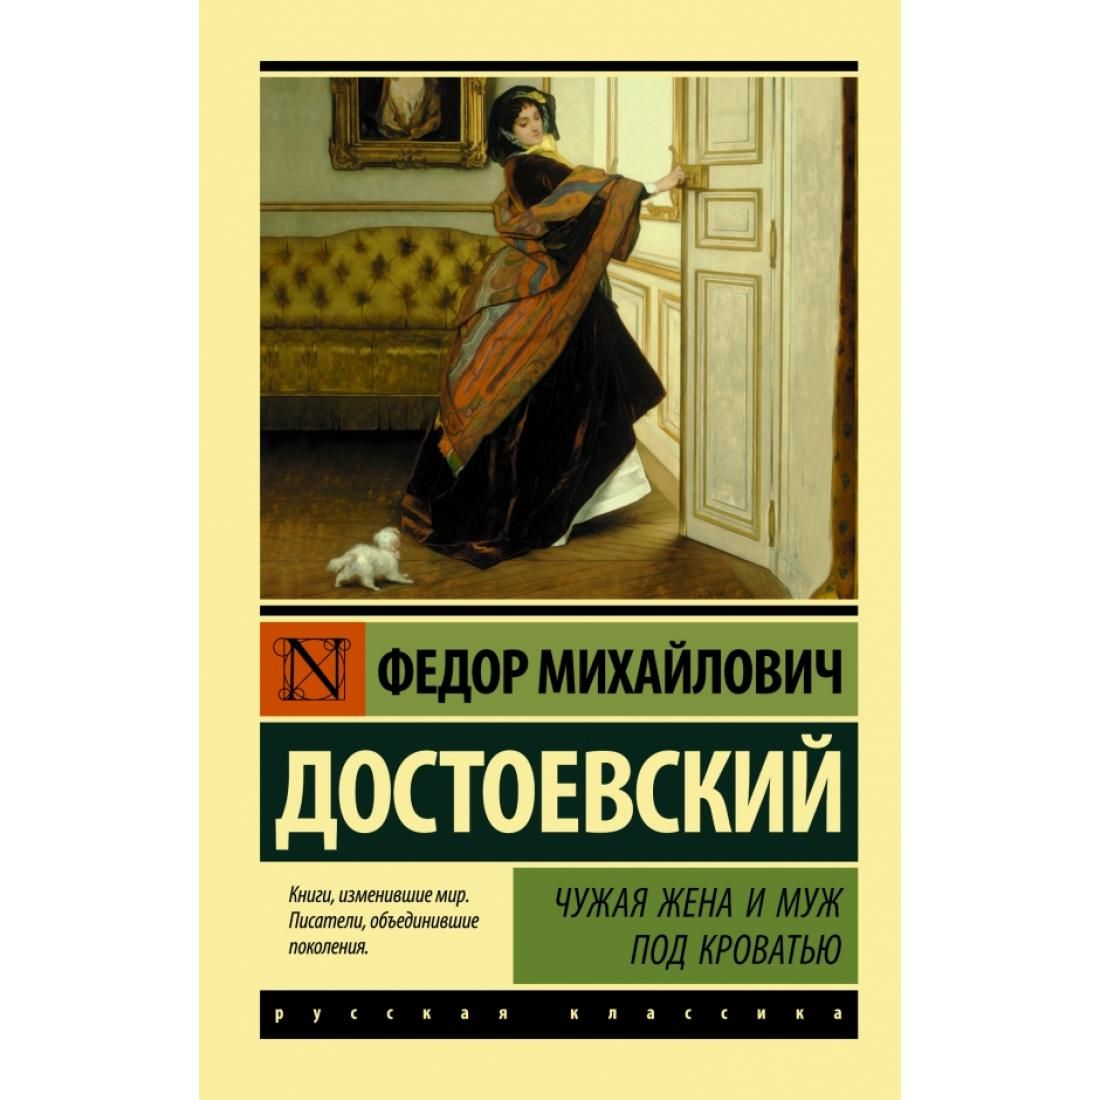 Достоевский ф. м. чужая жена и муж под кроватью